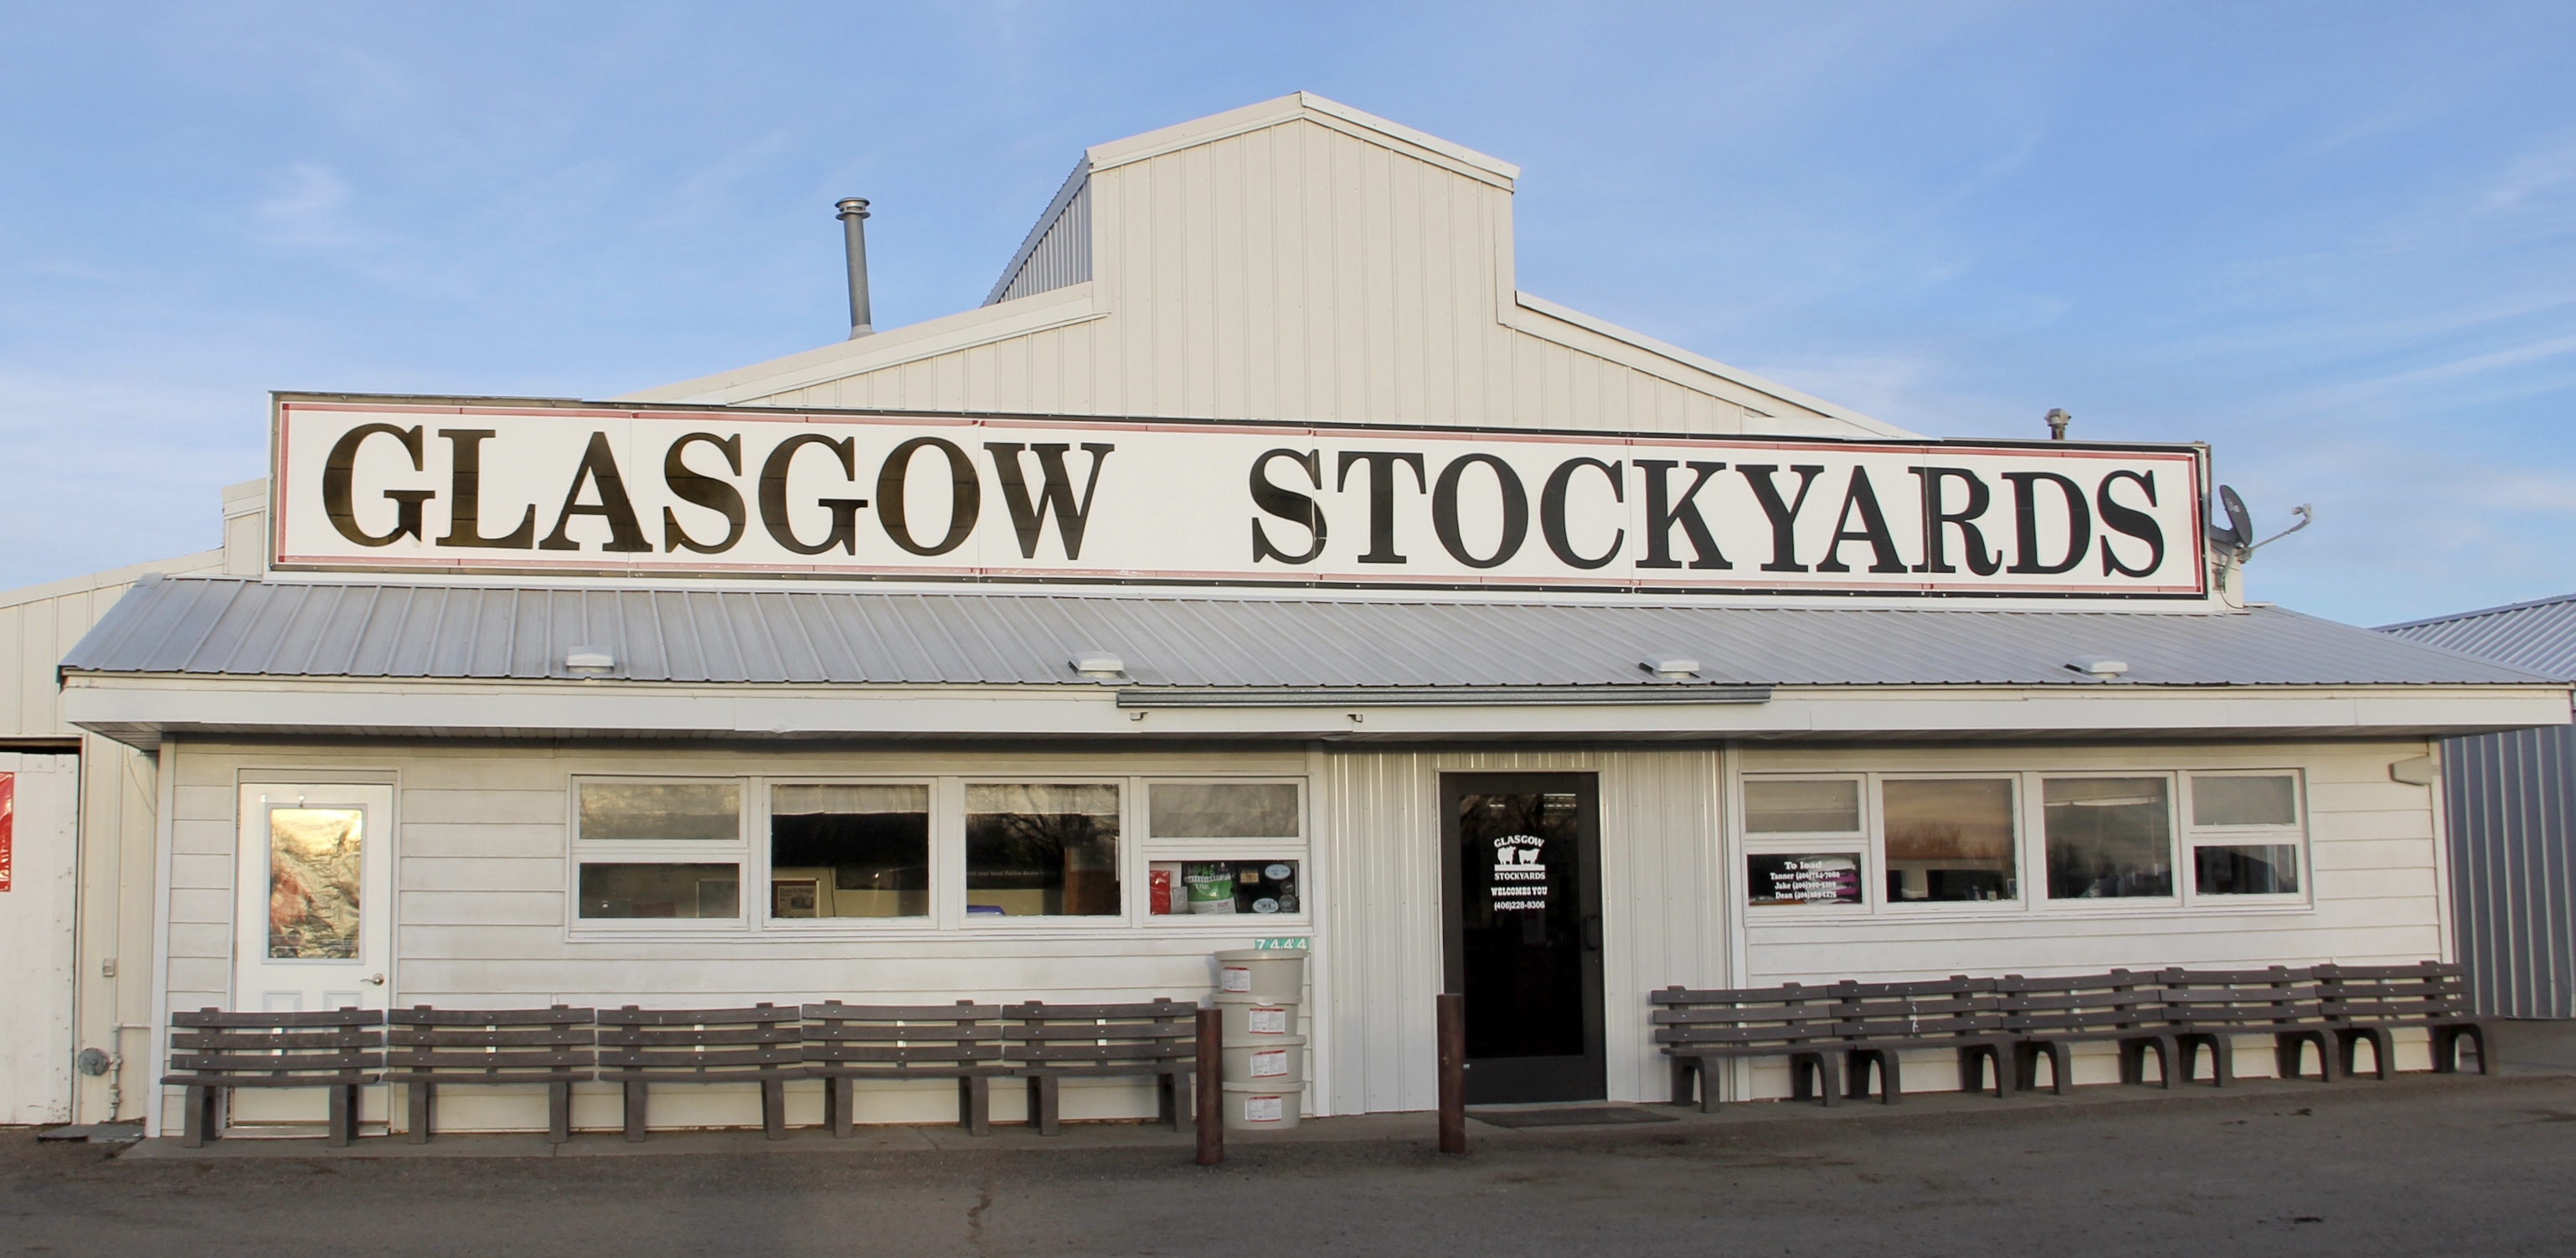 Glasgow Stockyards